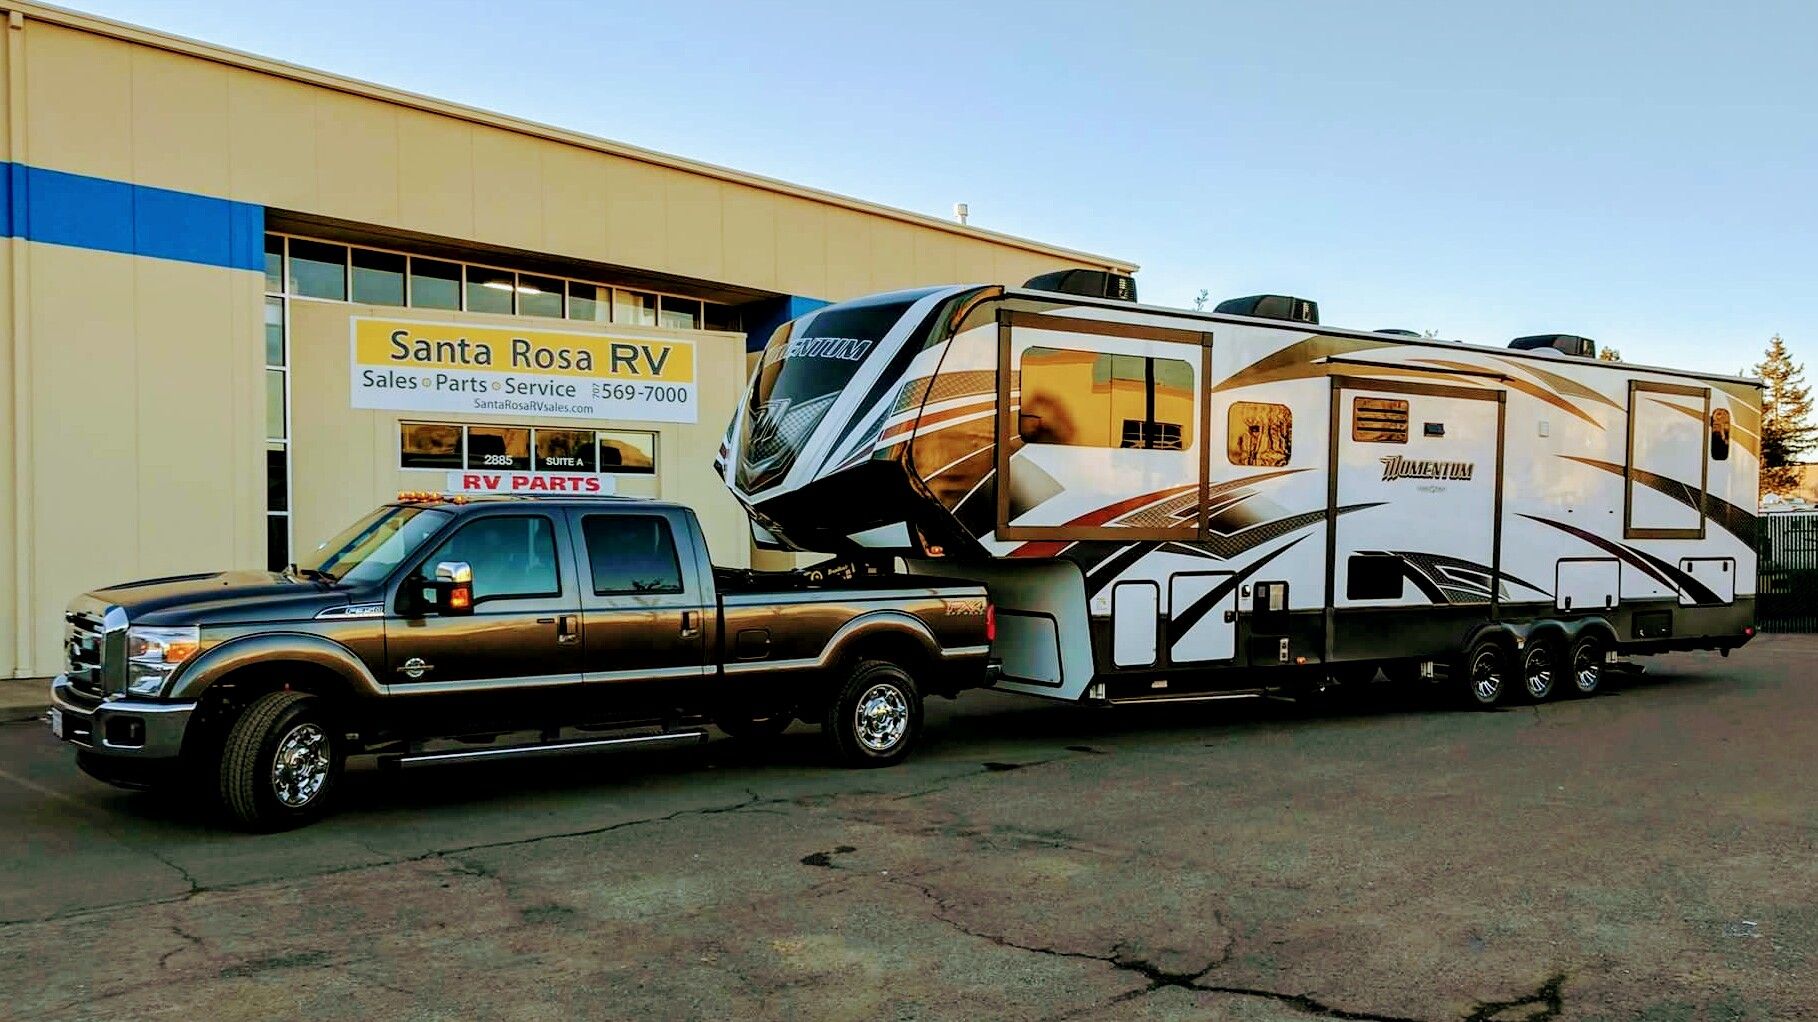 Santa Rosa RV